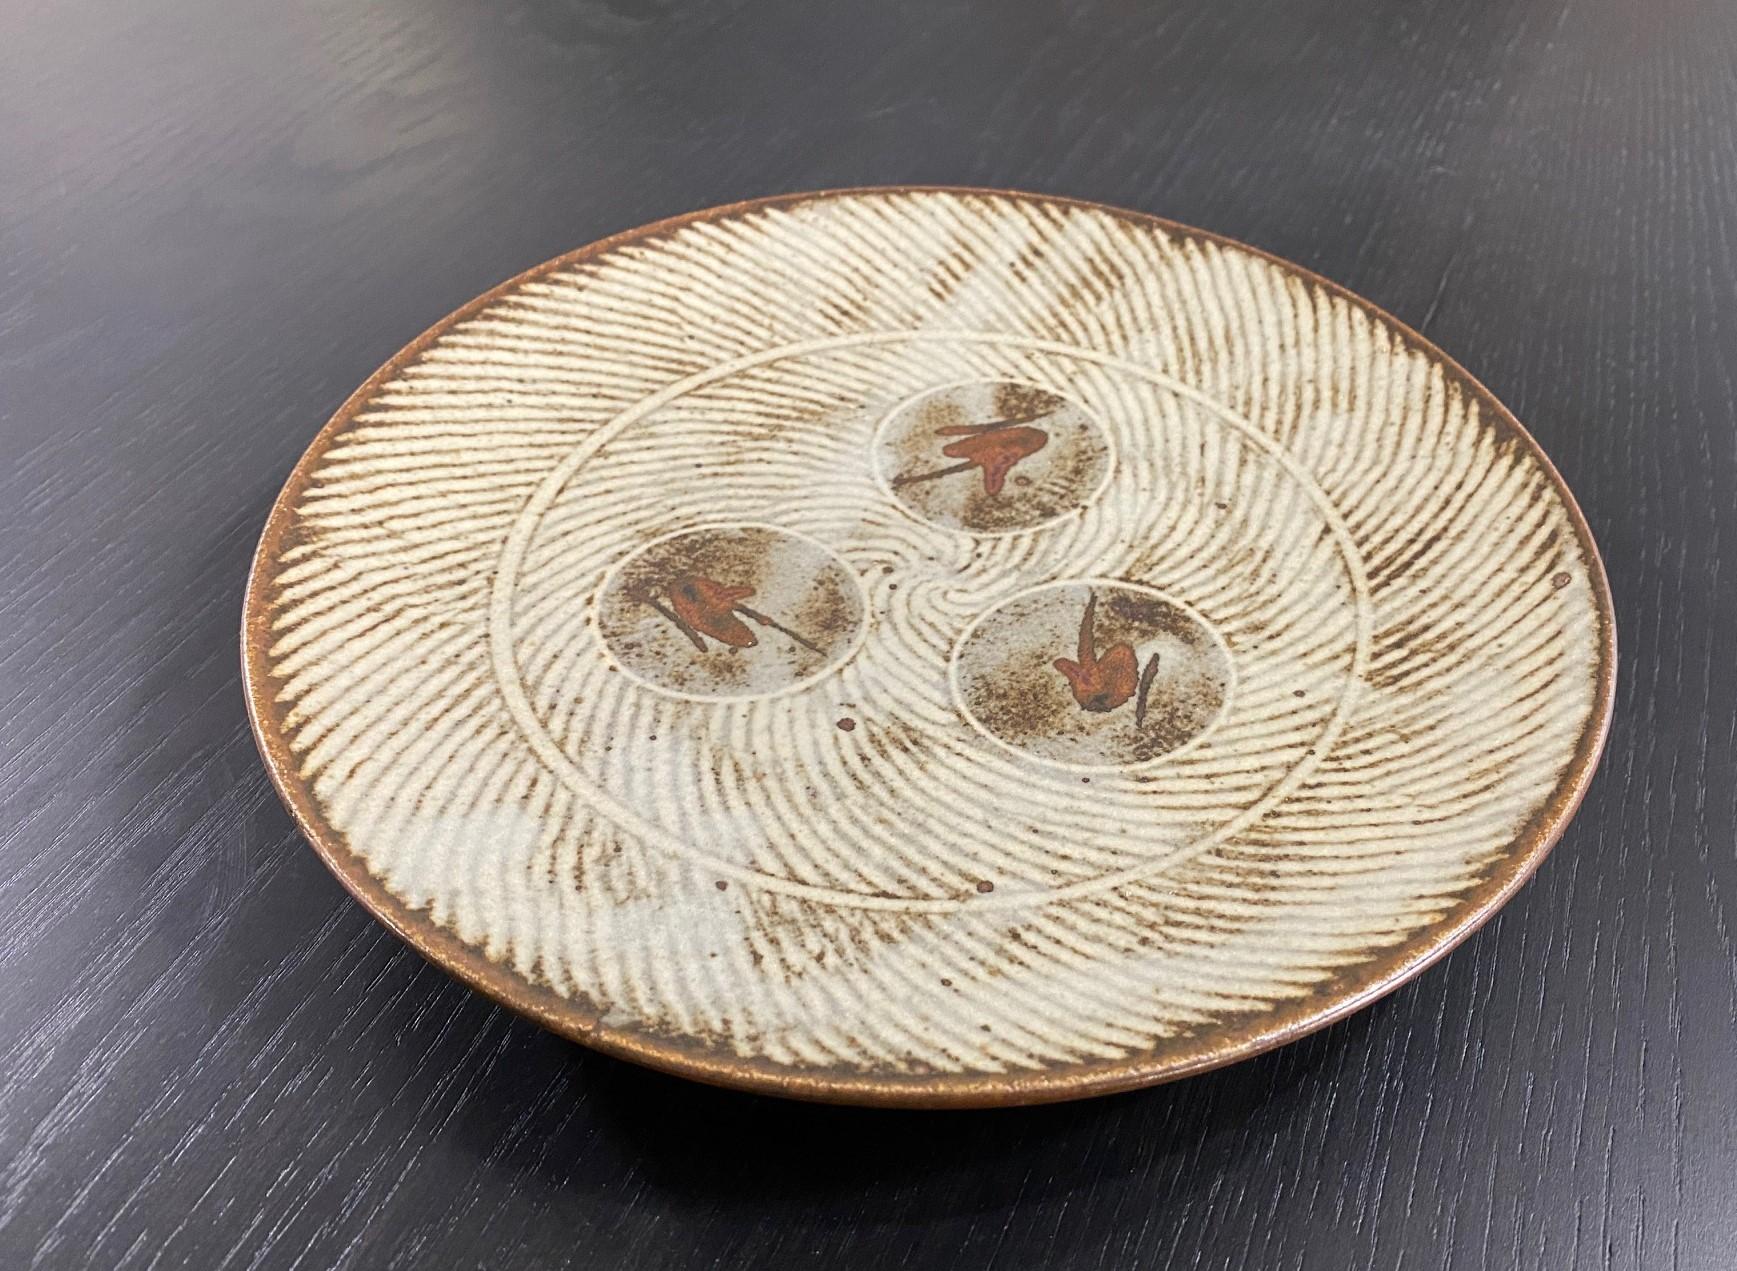 Ein exquisit dekorierter und wunderbar ausgeführter keramischer Mingei-Teller/eine niedrige Schale des japanischen Nationalschatzes und Mashiko-Töpfermeisters Tatsuzo Shimaoka. Diese Arbeit zeigt sein berühmtes Jomon Zogan-Seilintarsienmuster,